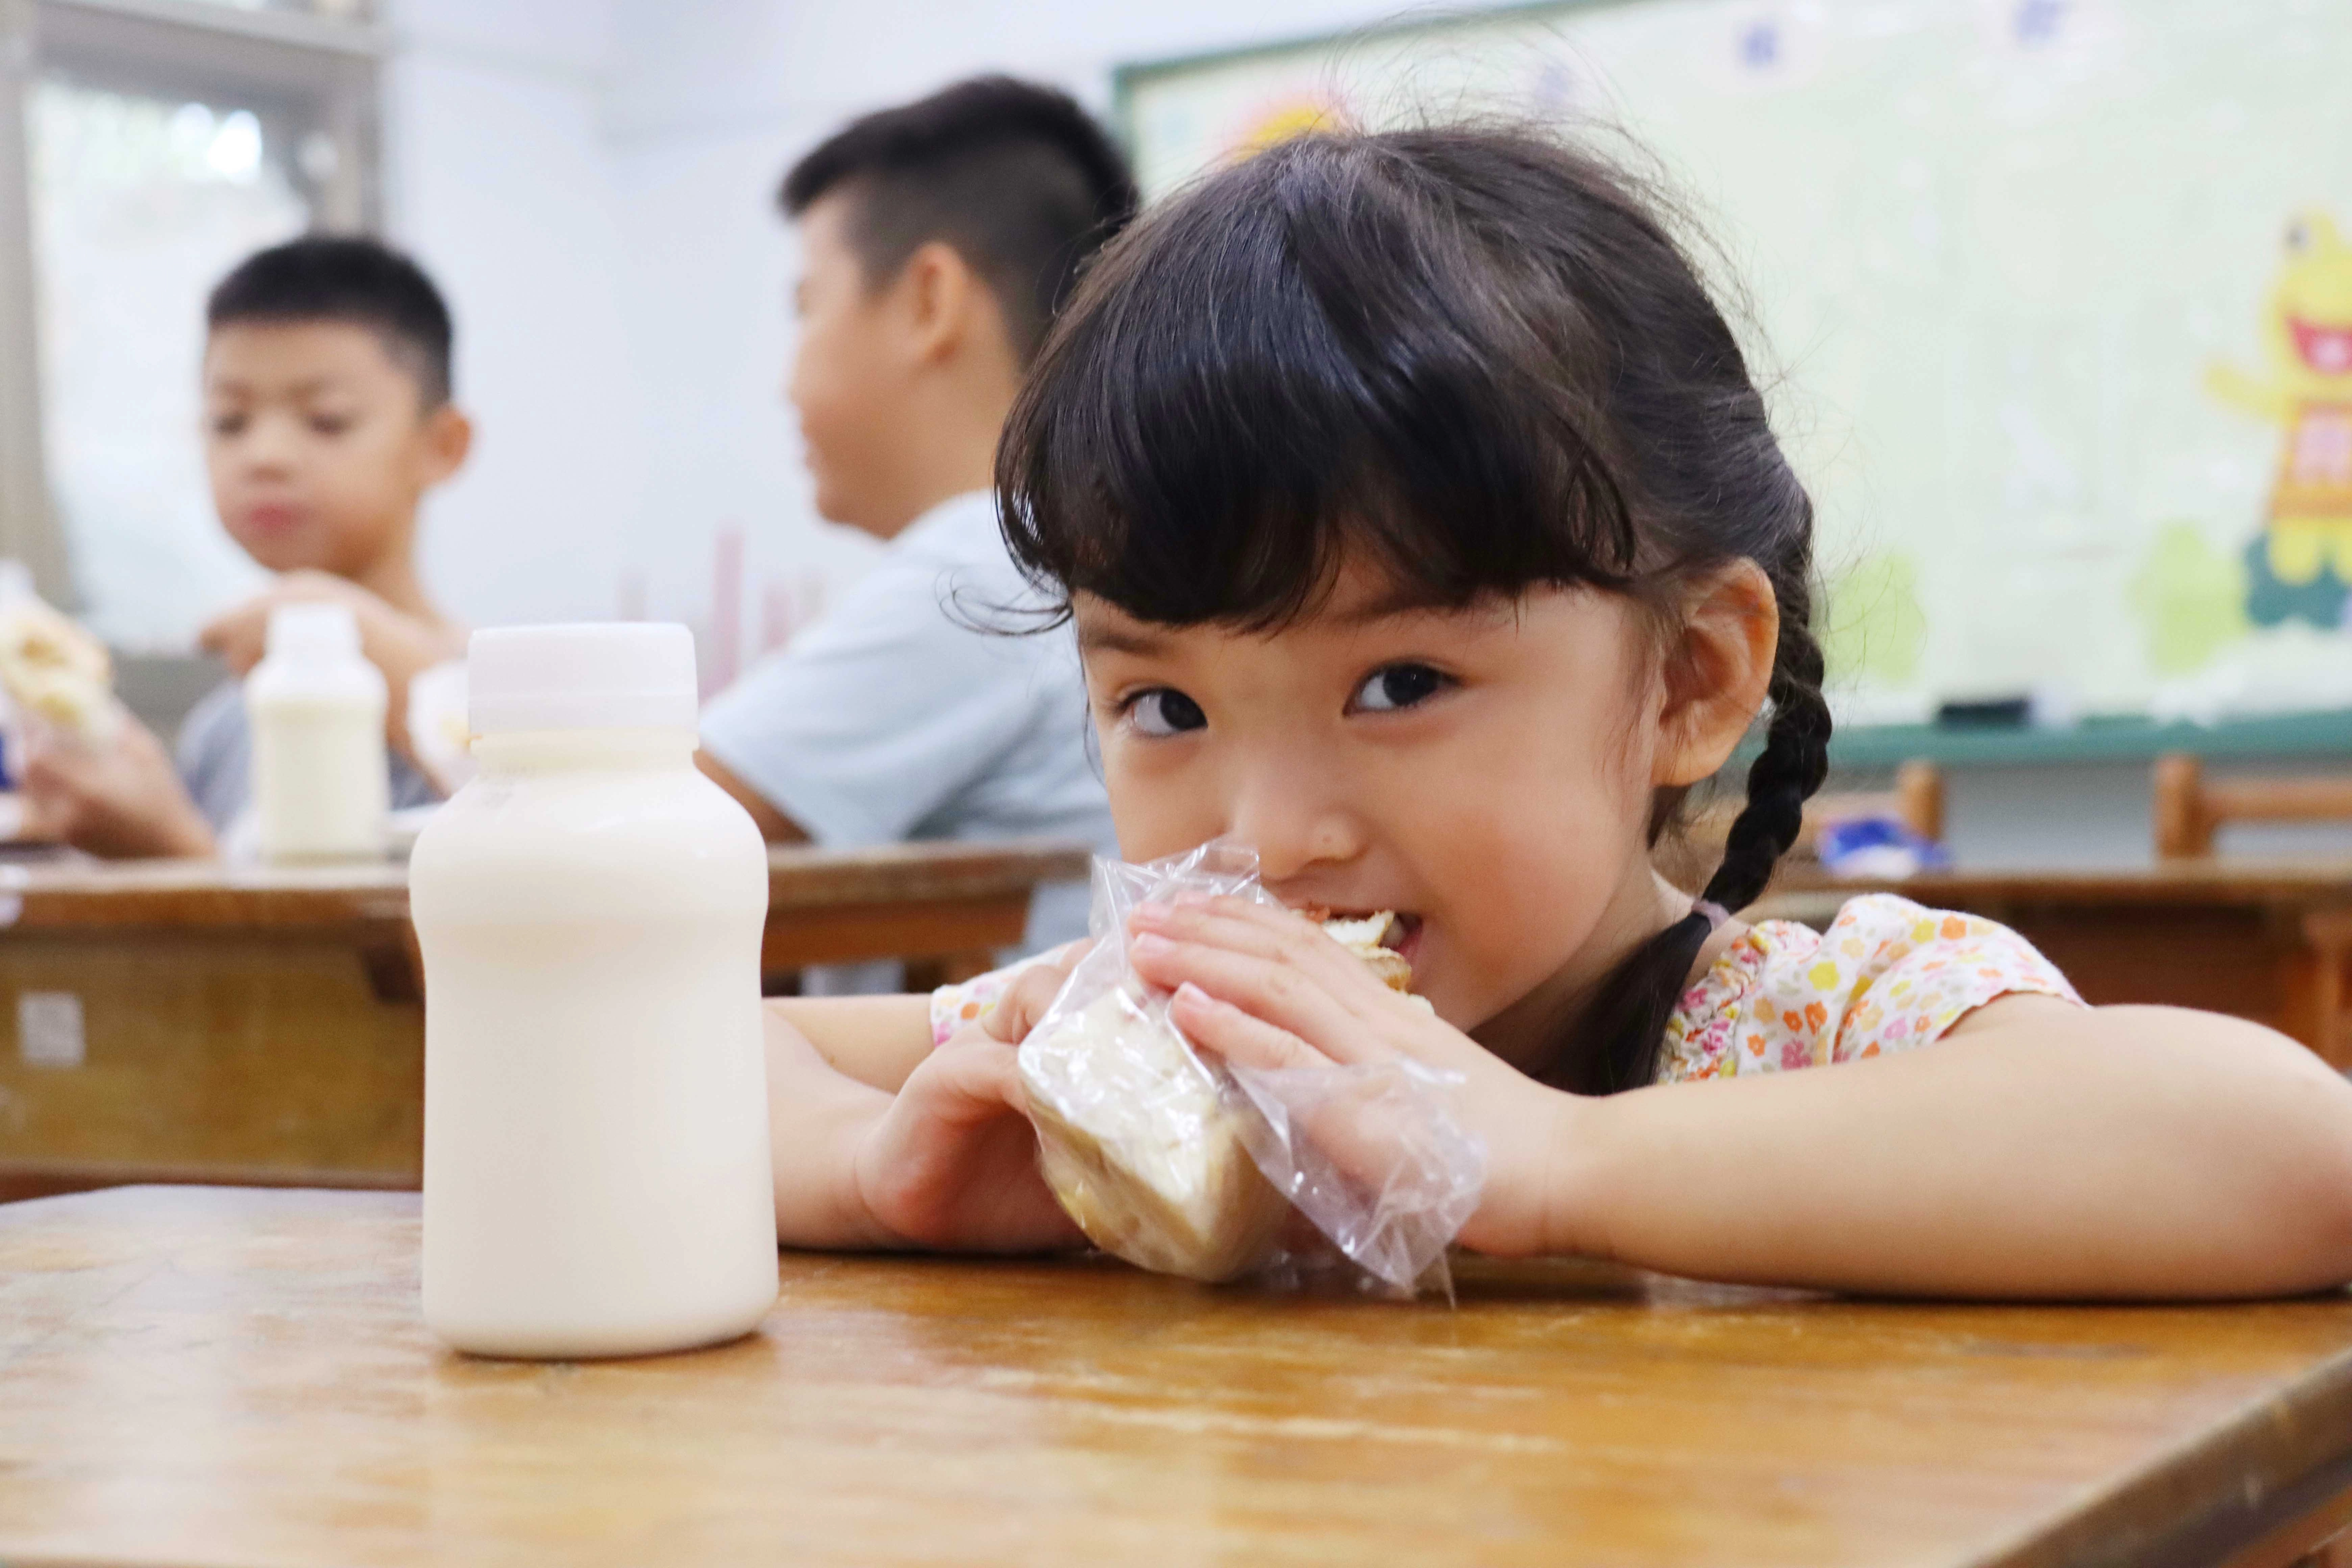 營養的早餐給予孩子足夠的養分迎接一天的學習